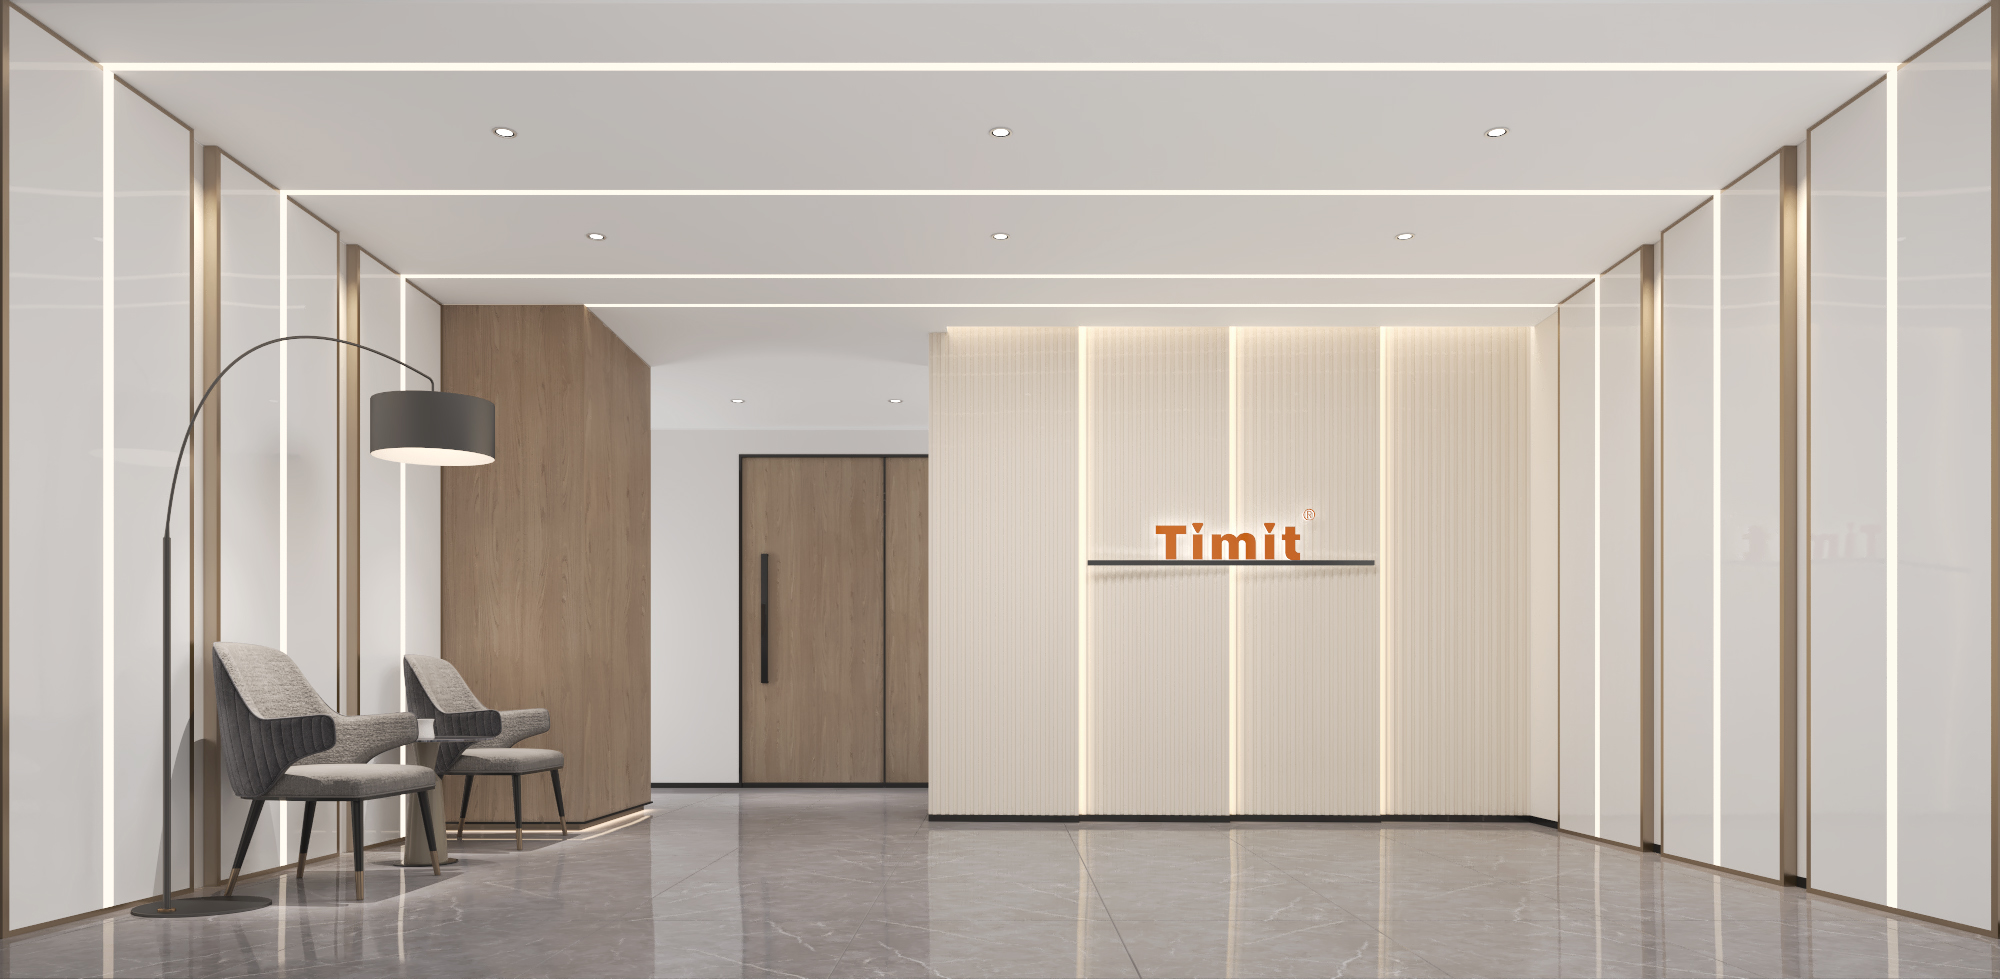 4张添美特科技前厅设计效果图-企业前厅设计案例分享-深圳文丰装饰